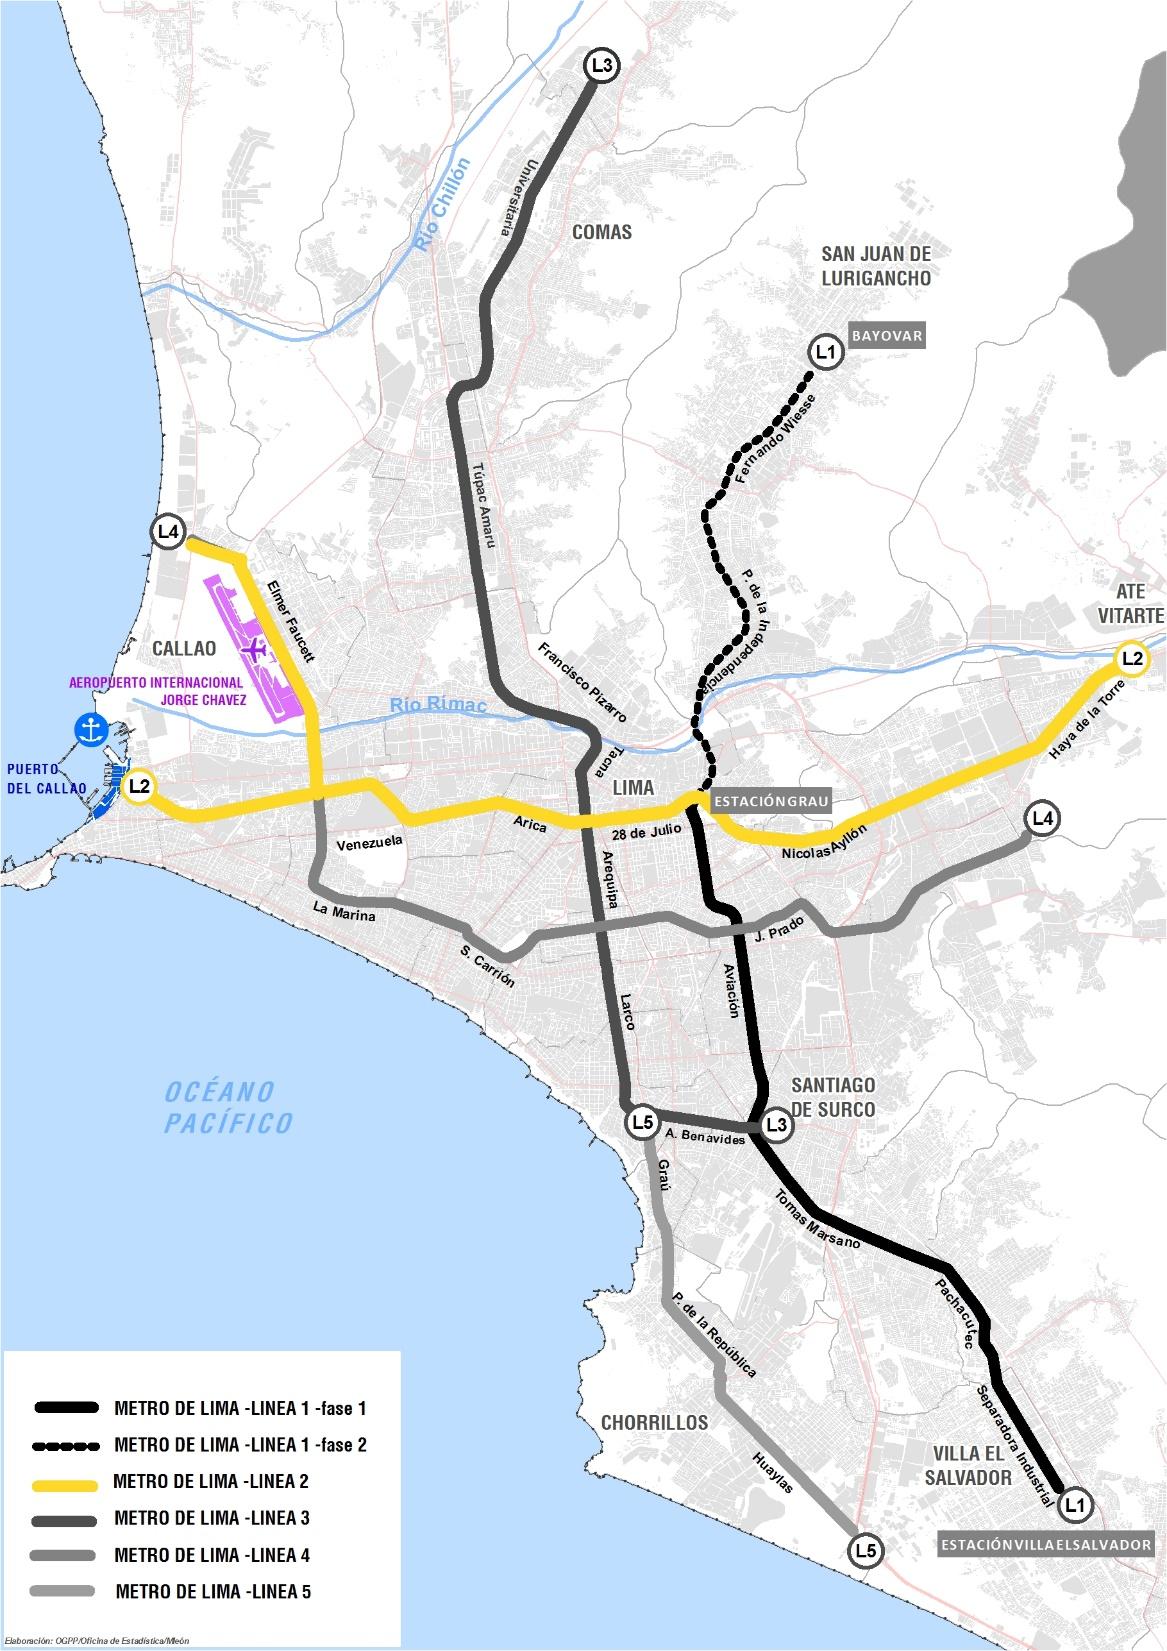 LINEA 2 Y RAMAL FAUCETT - GAMBETTA Meta al 2017: 7 000 metros de túneles (obra civil) 11 estaciones en construcción de un total de 35 Provisión de 5 trenes 80% de ejecución